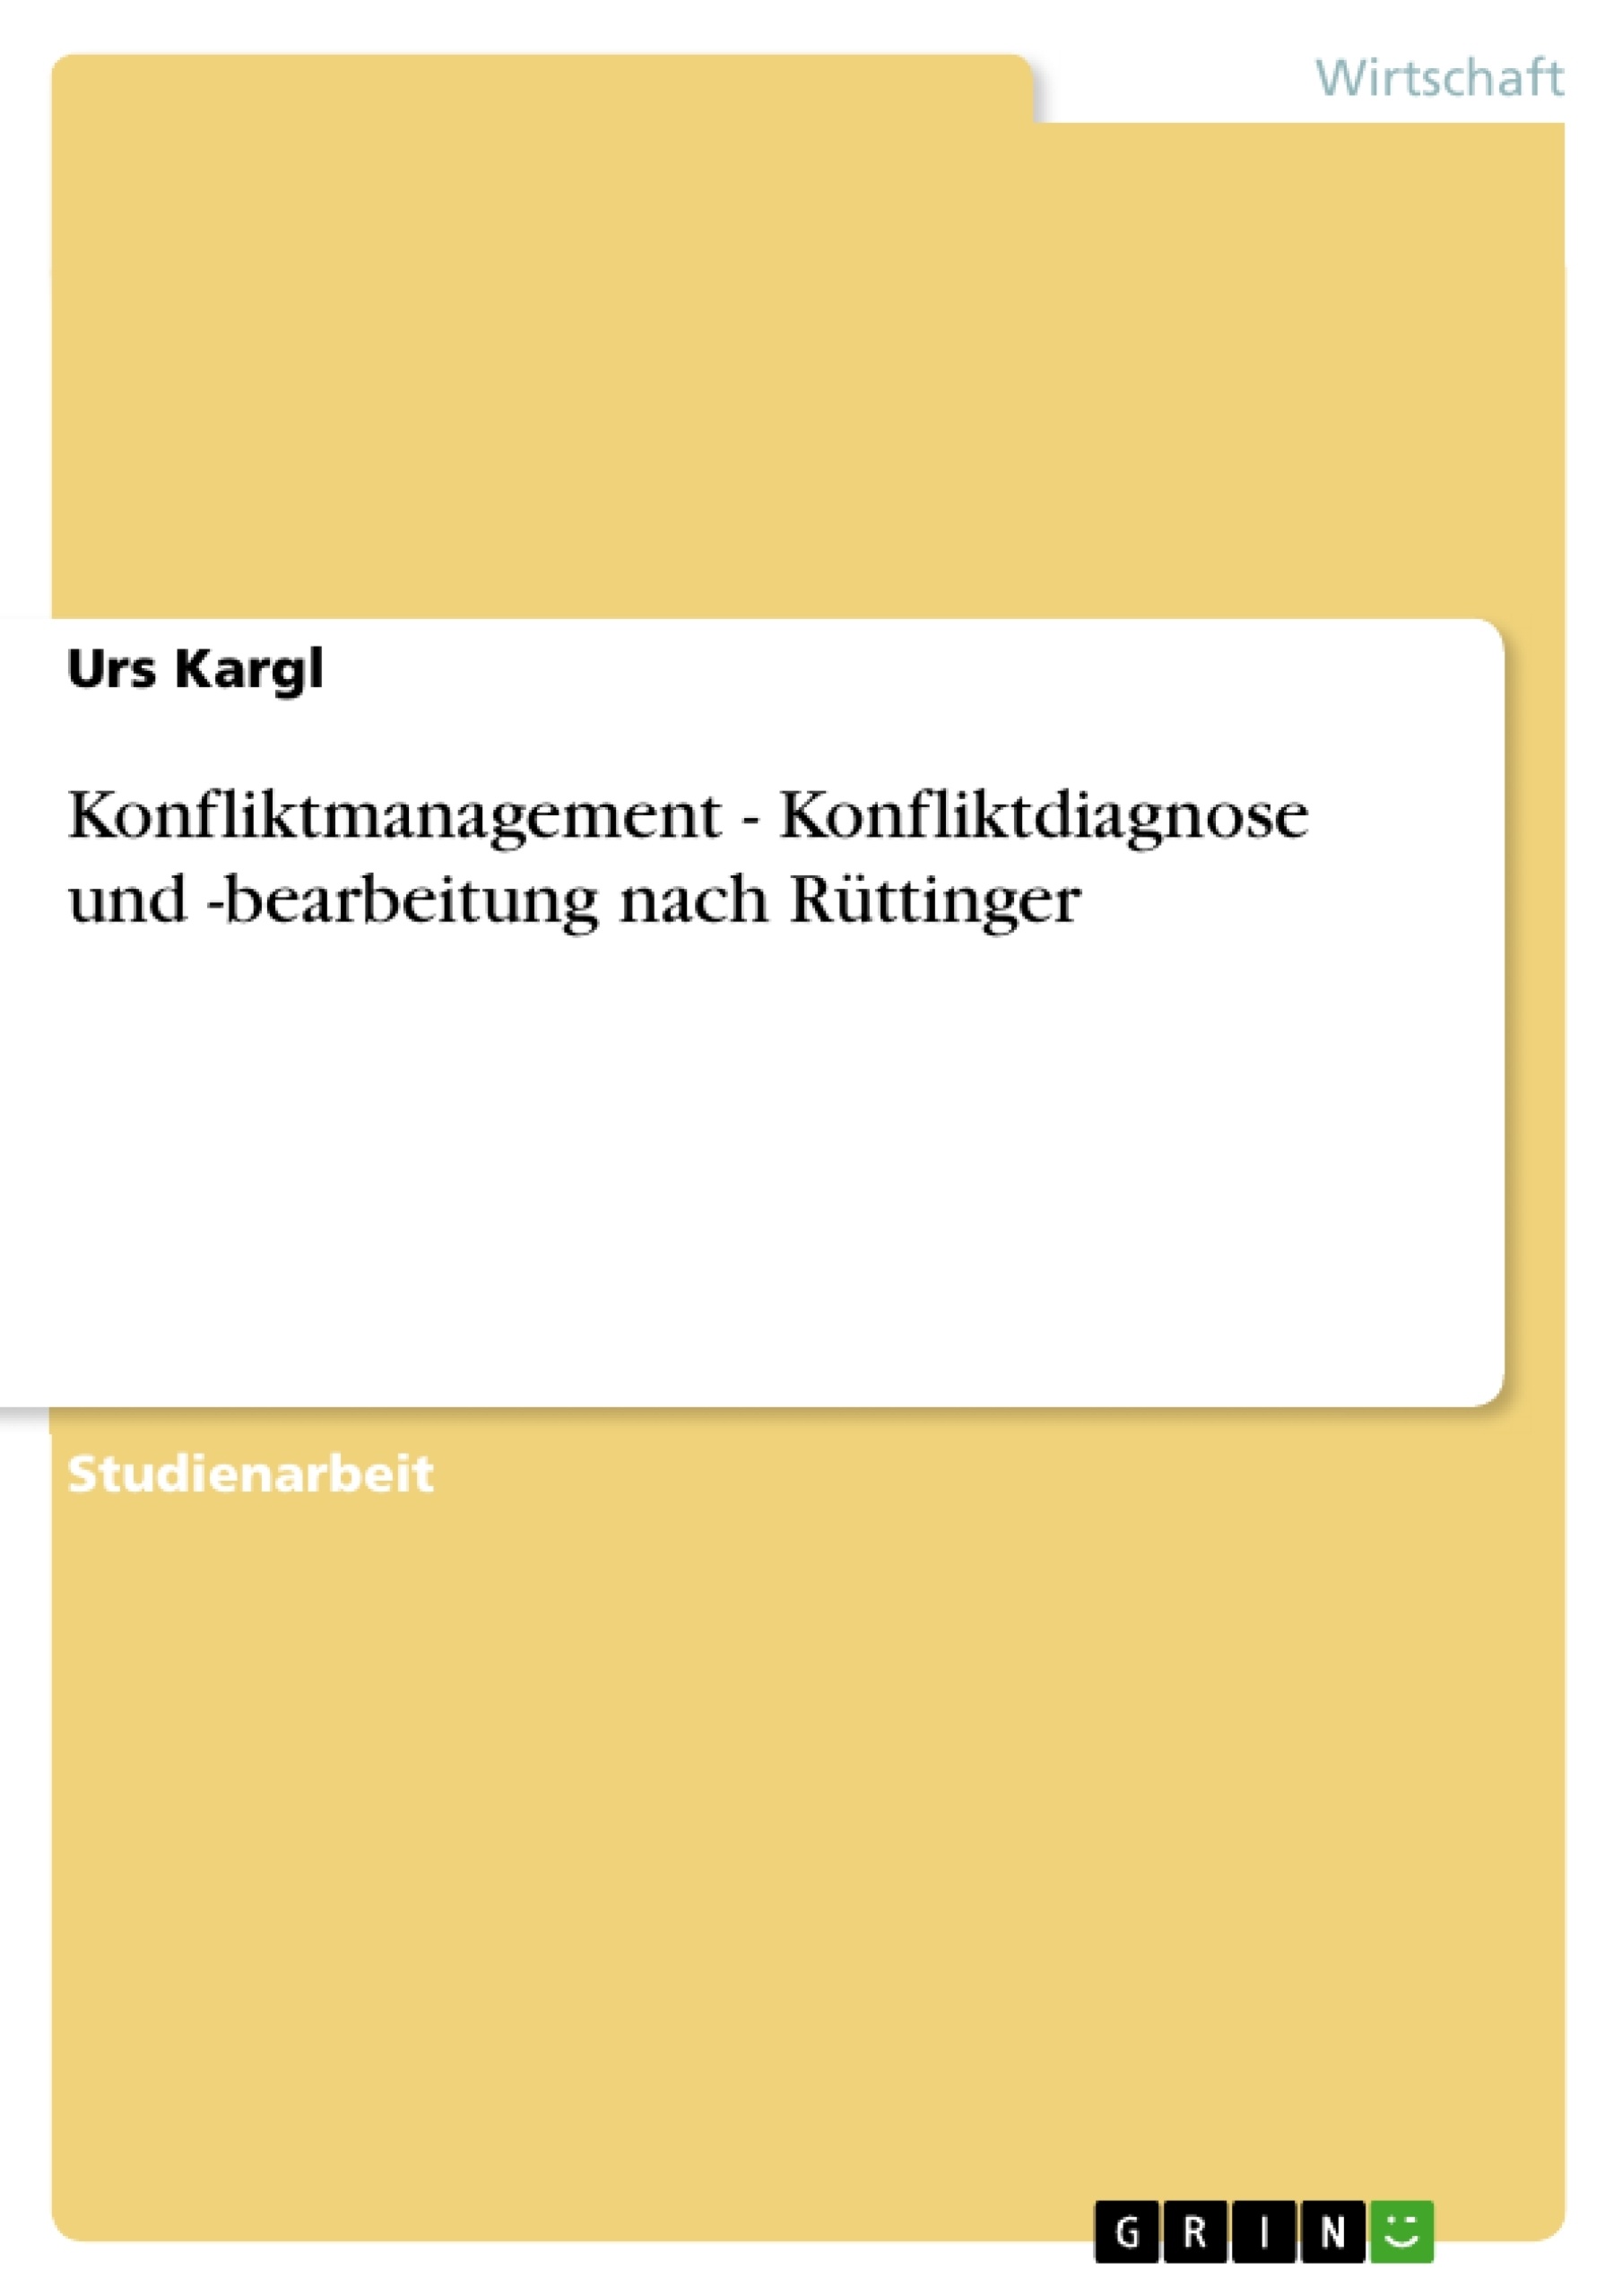 Titre: Konfliktmanagement - Konfliktdiagnose und -bearbeitung nach Rüttinger